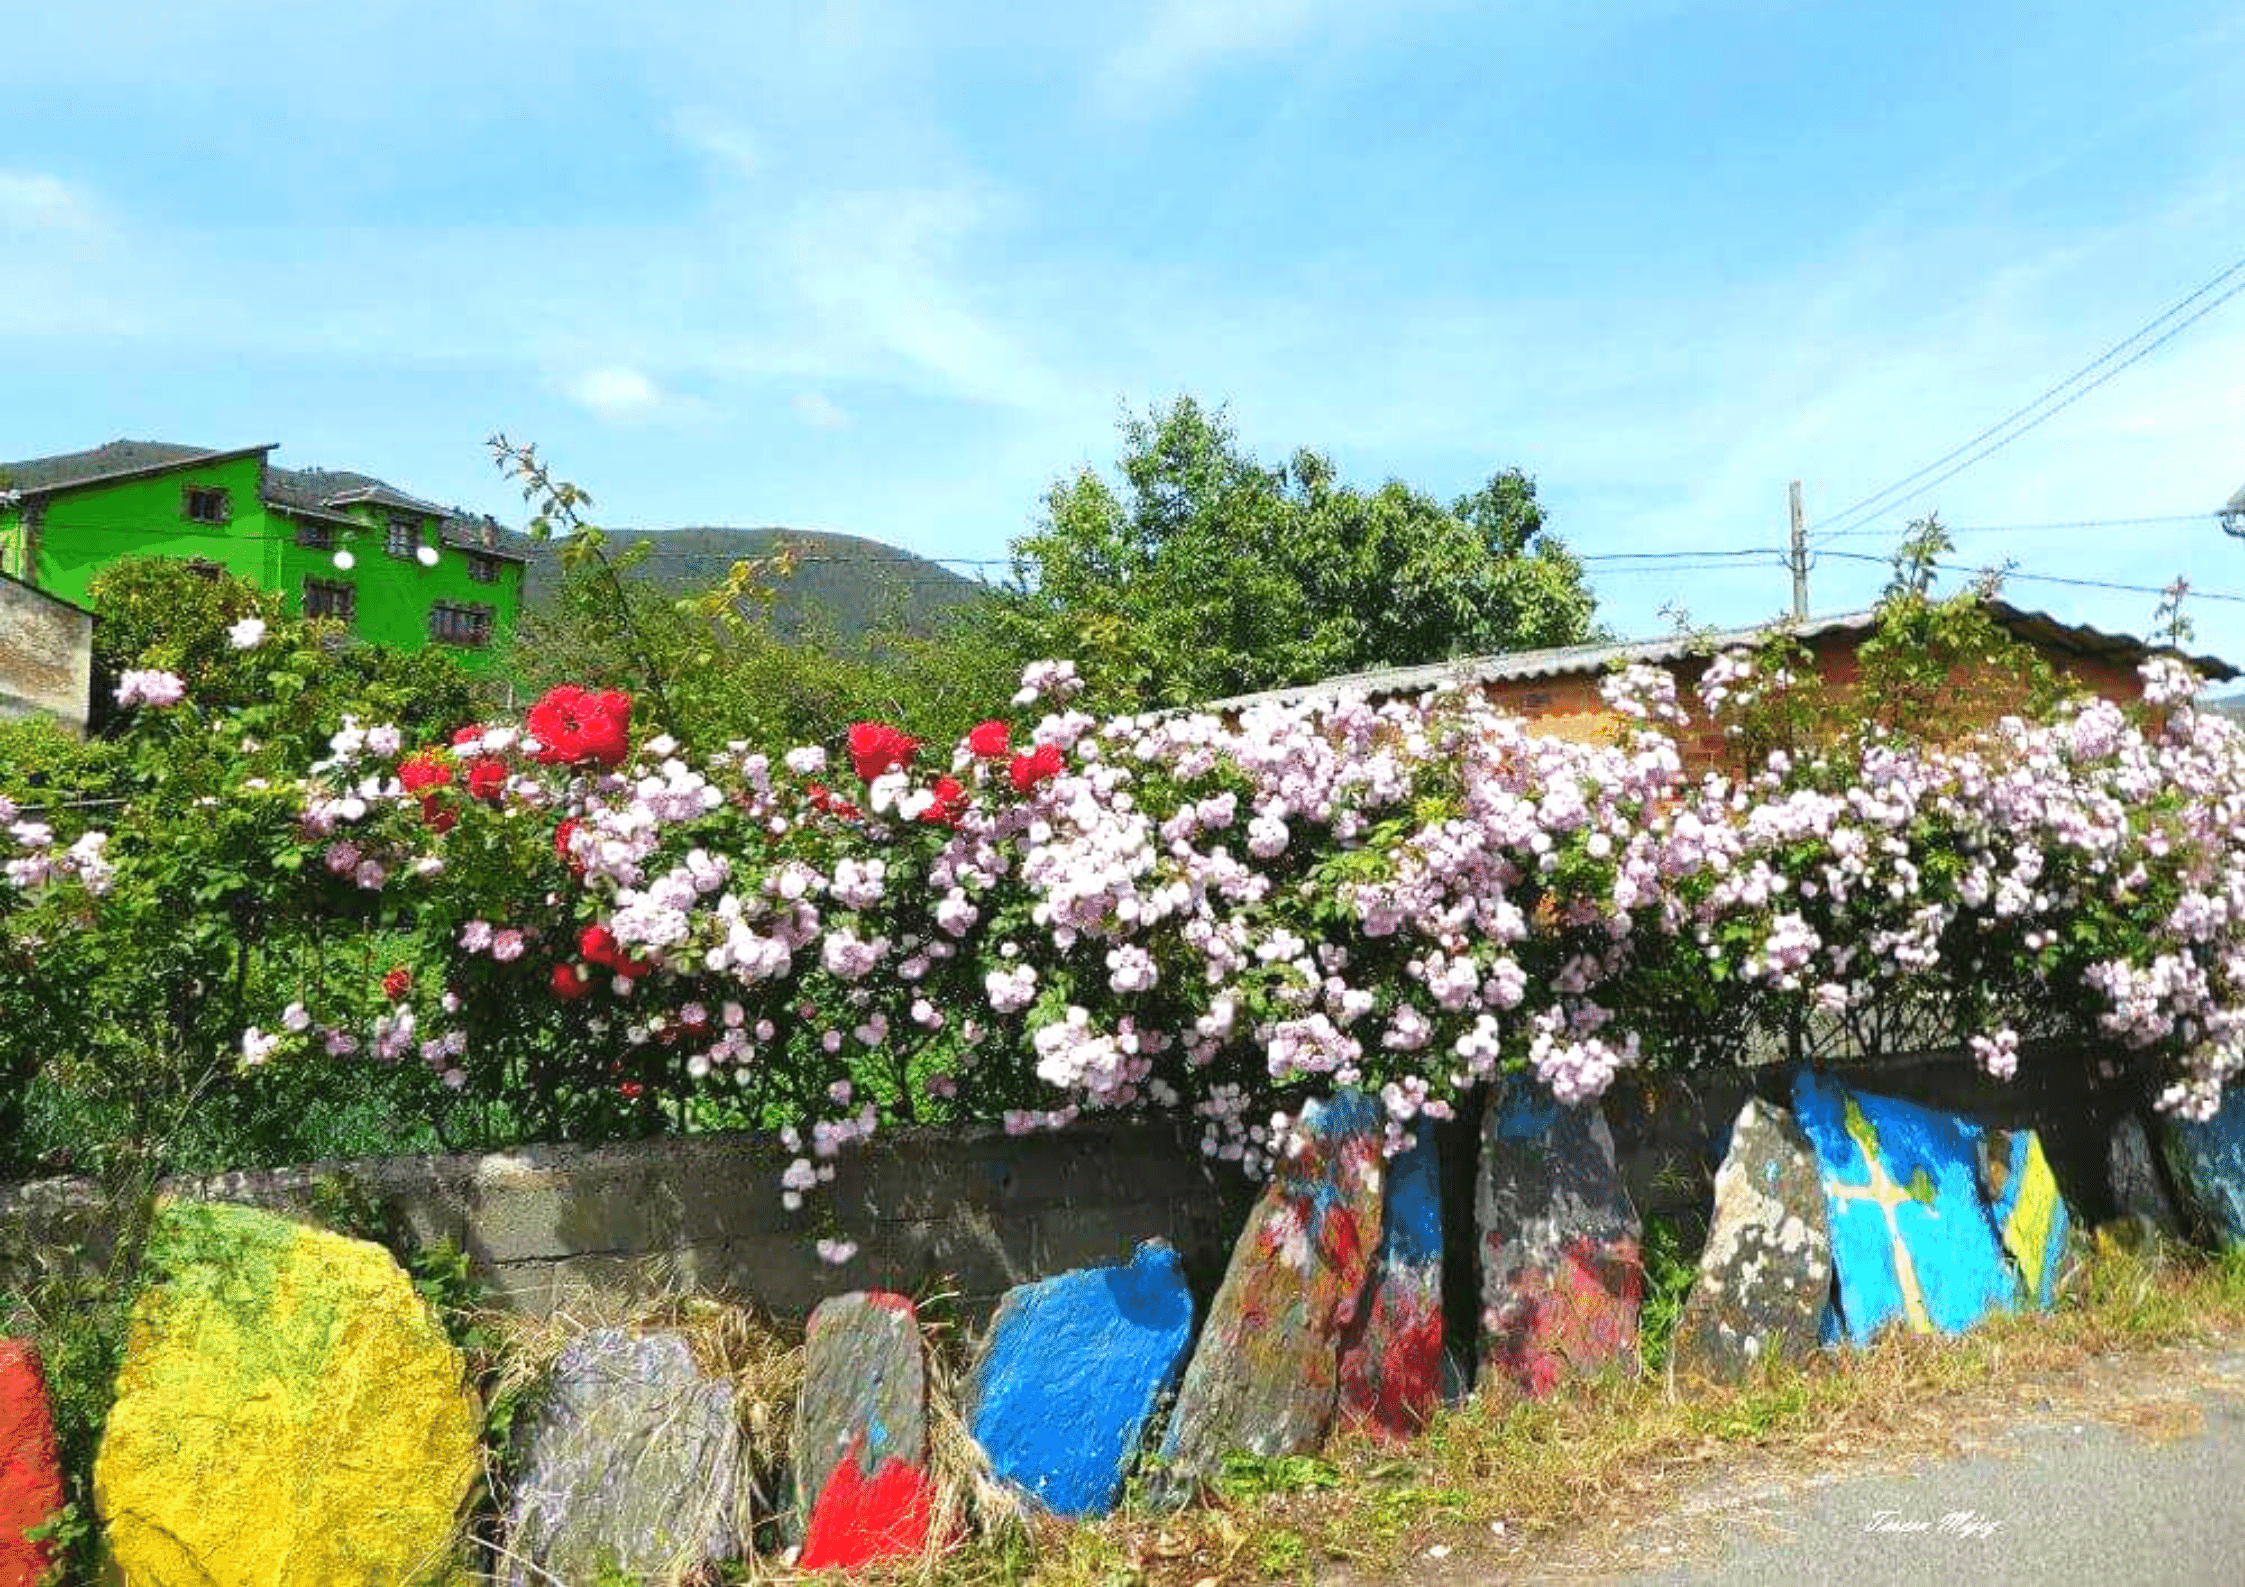 Casa Manolón - Rural tourism accommodation in western Asturias